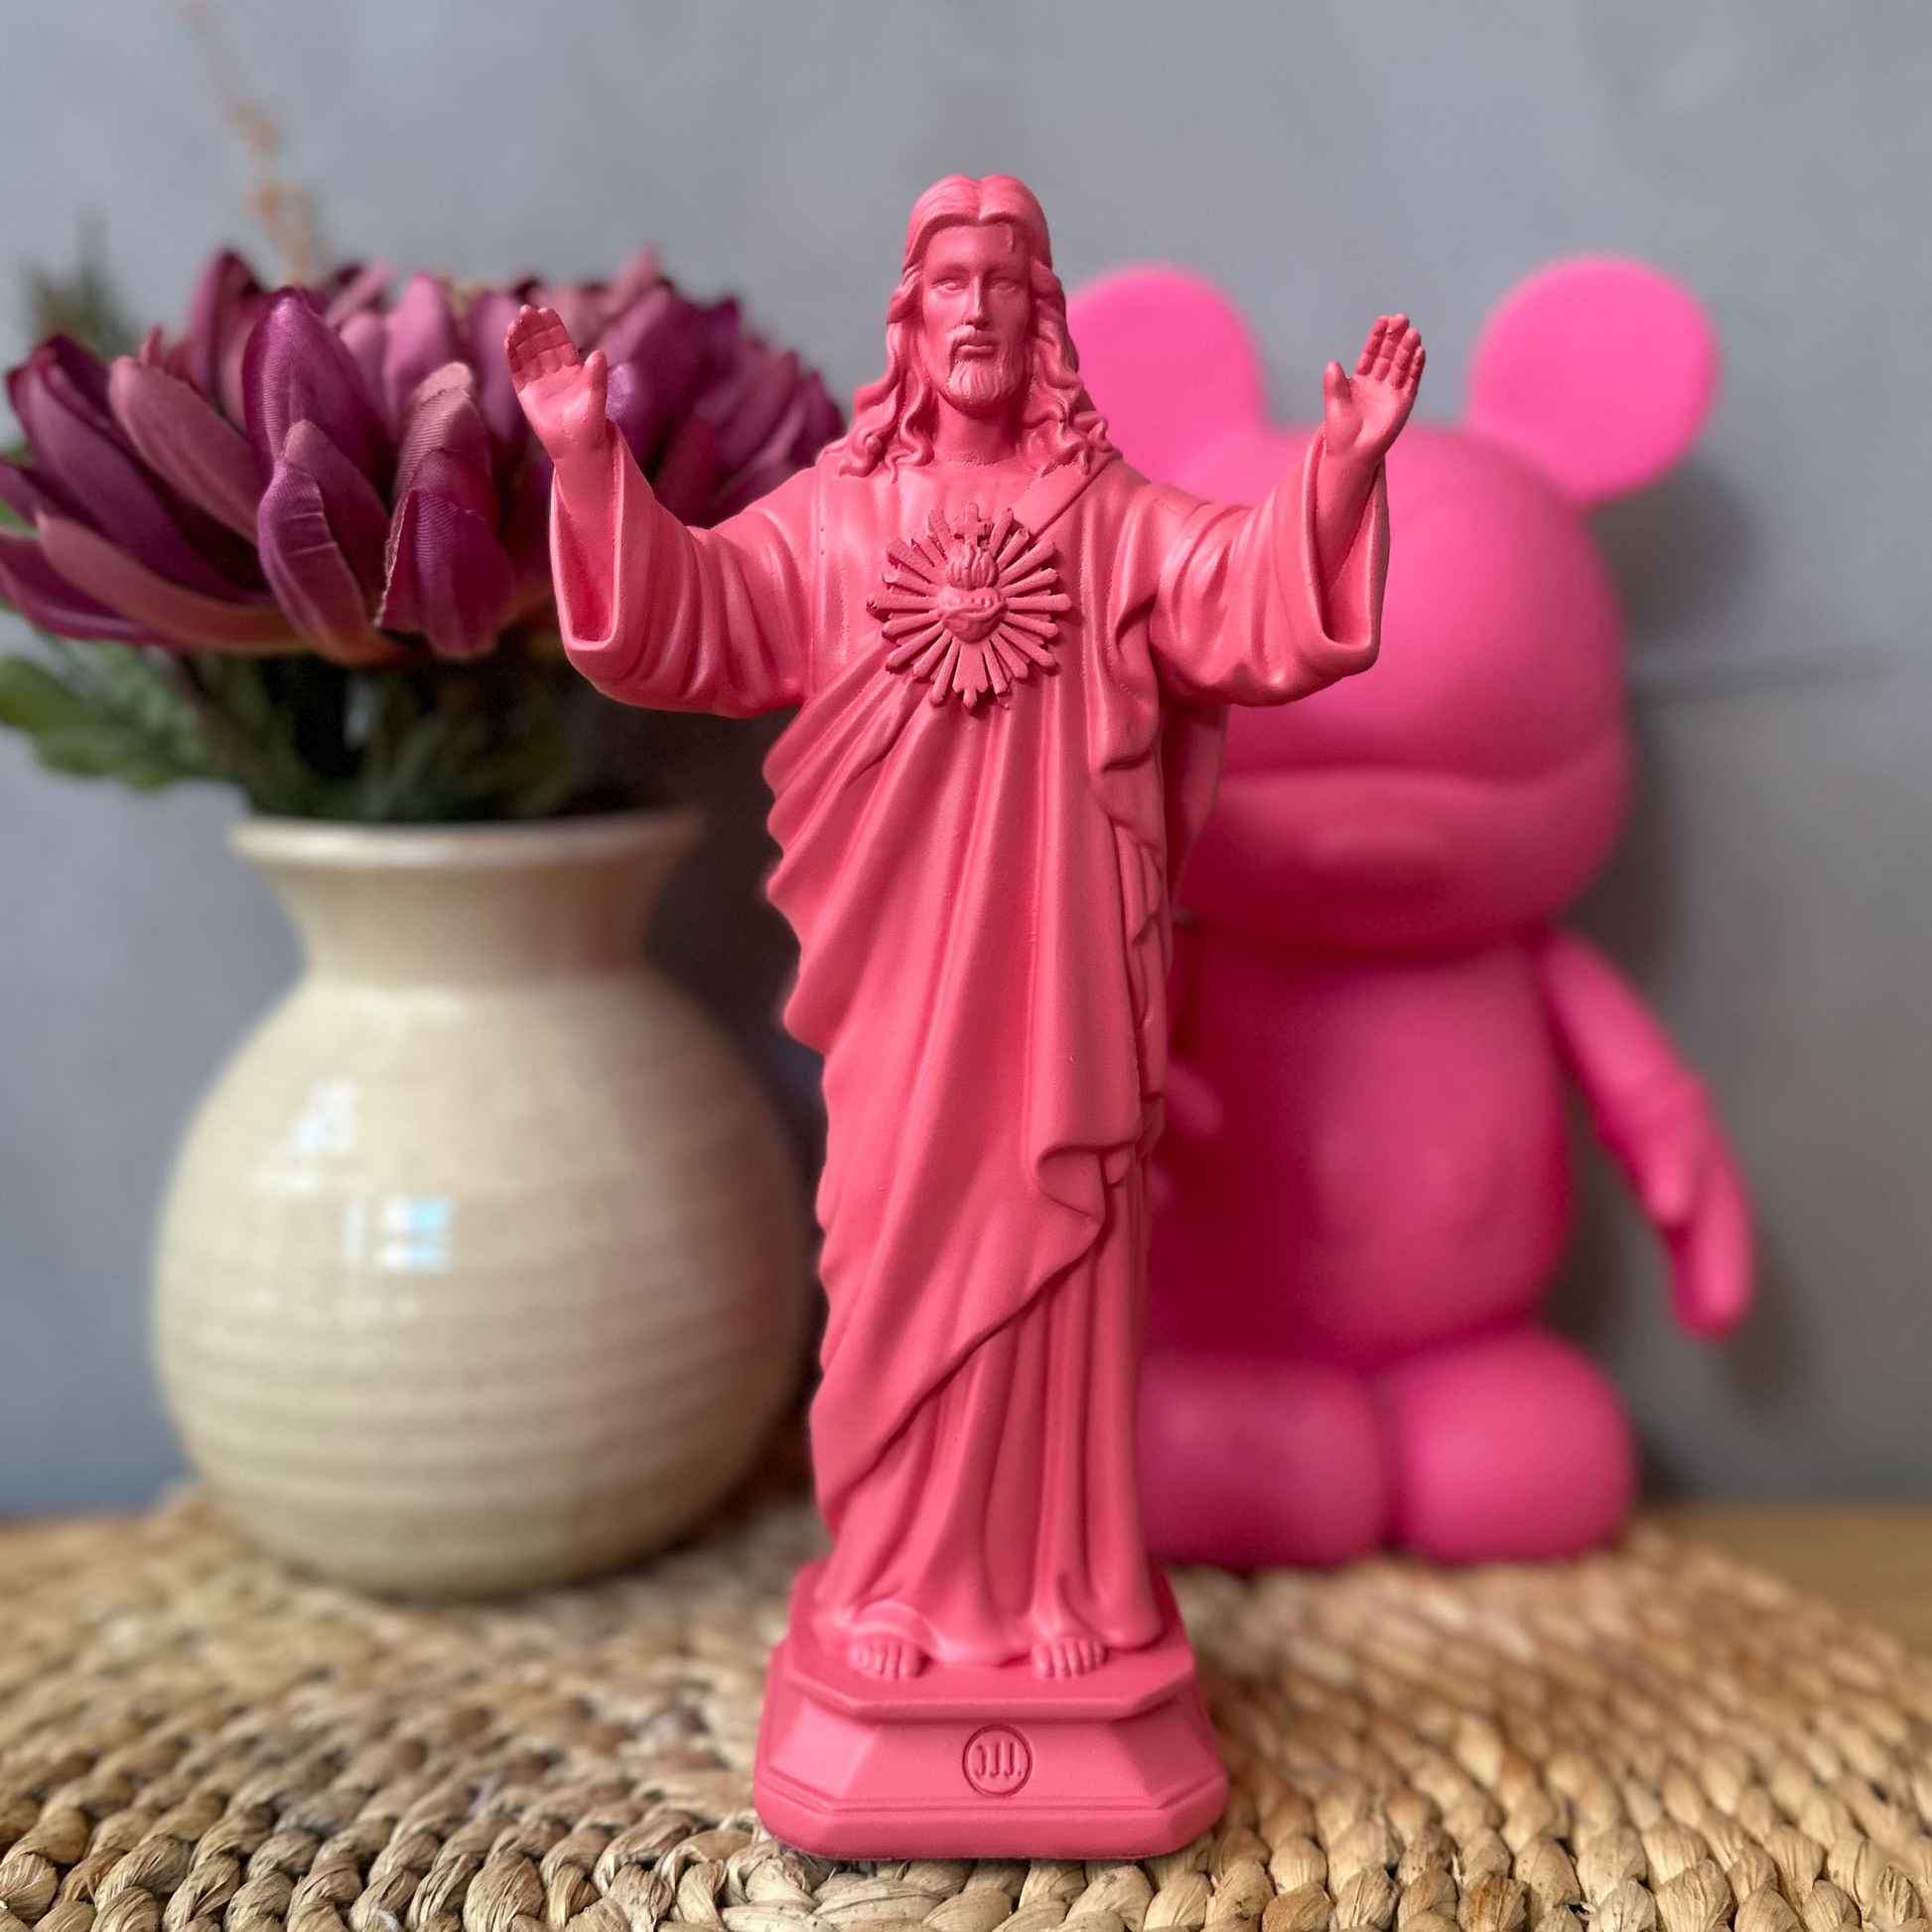 Statuette Jesus loves you - couleurs intemporelles bazooka